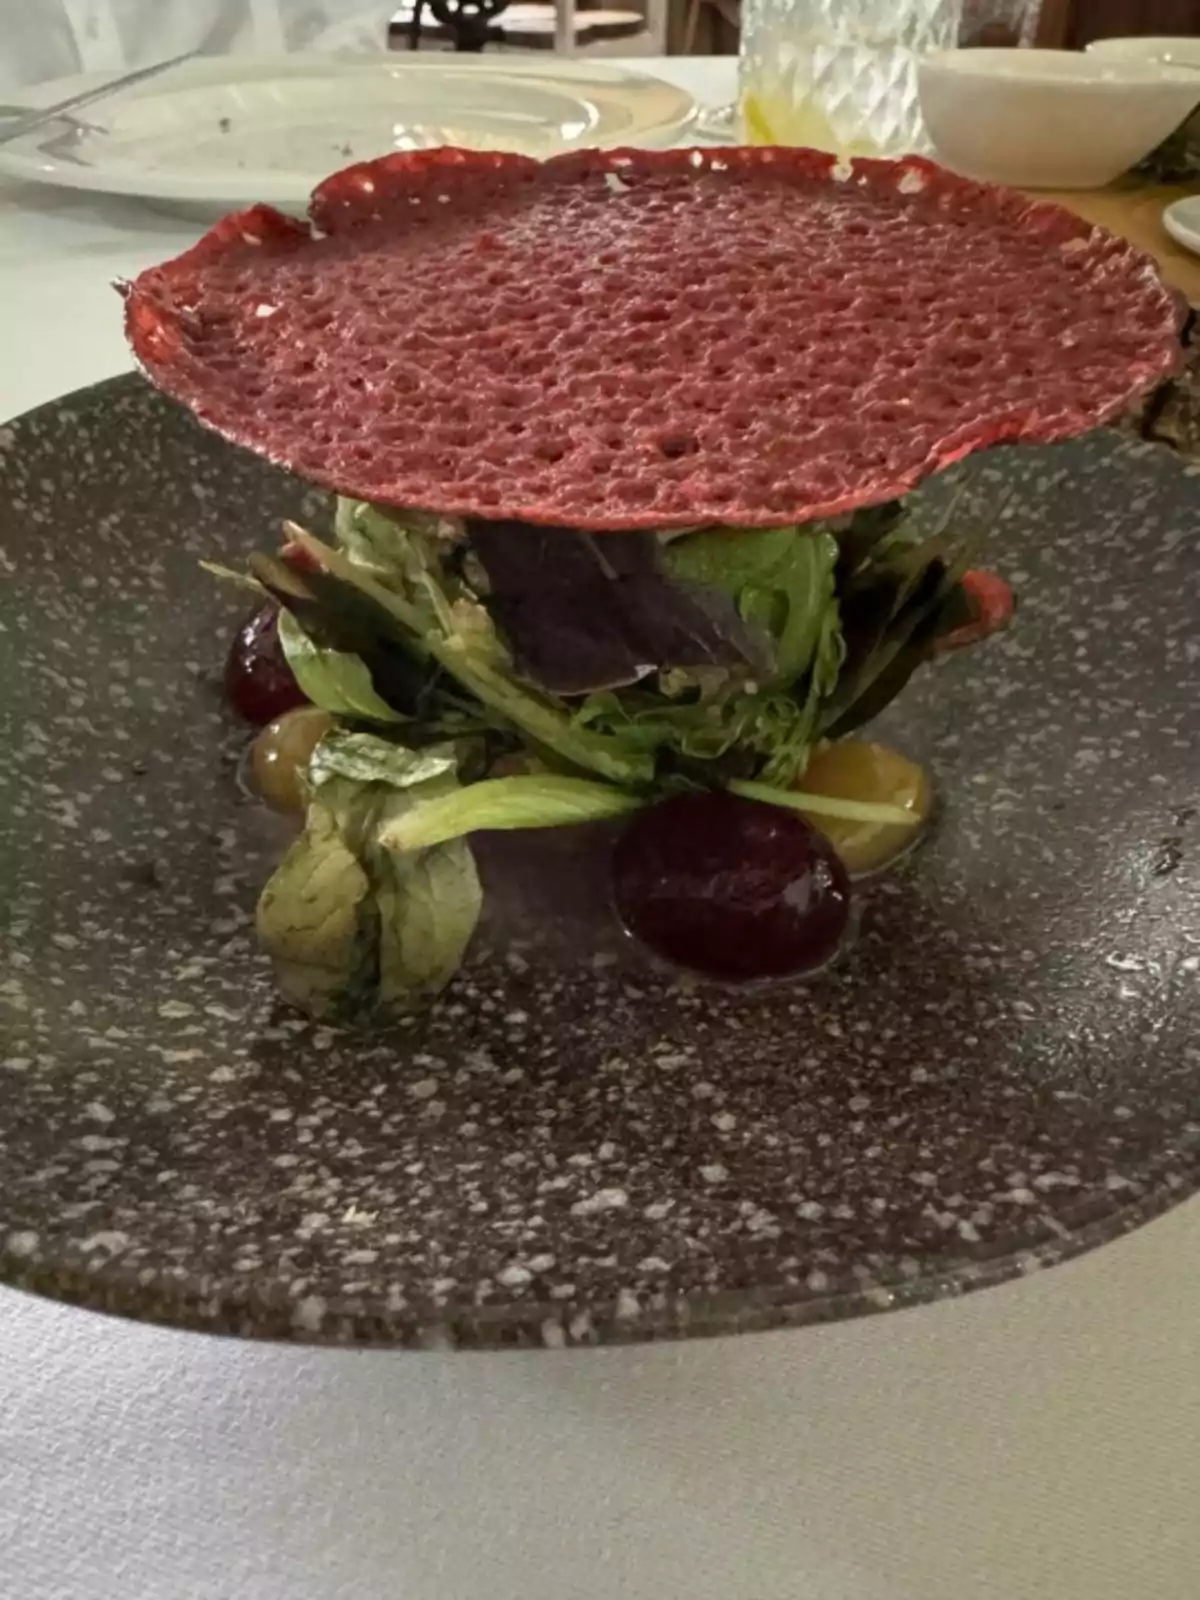 Un plato de ensalada con una oblea roja crujiente encima, servido en un plato oscuro sobre una mesa blanca.